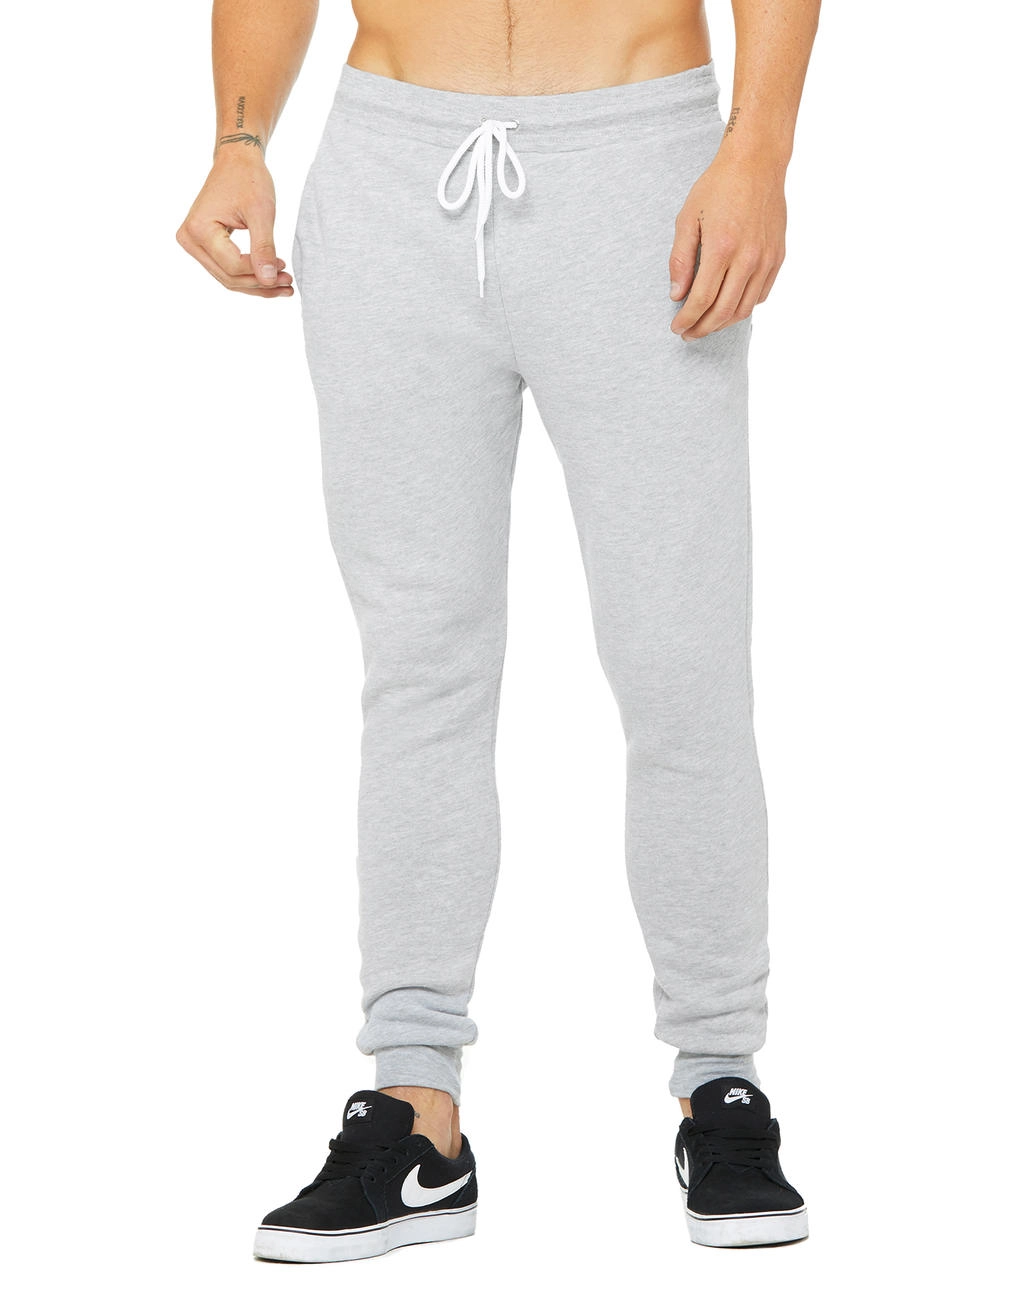 Unisex Jogger Sweatpants zum Besticken und Bedrucken in der Farbe Athletic Heather mit Ihren Logo, Schriftzug oder Motiv.